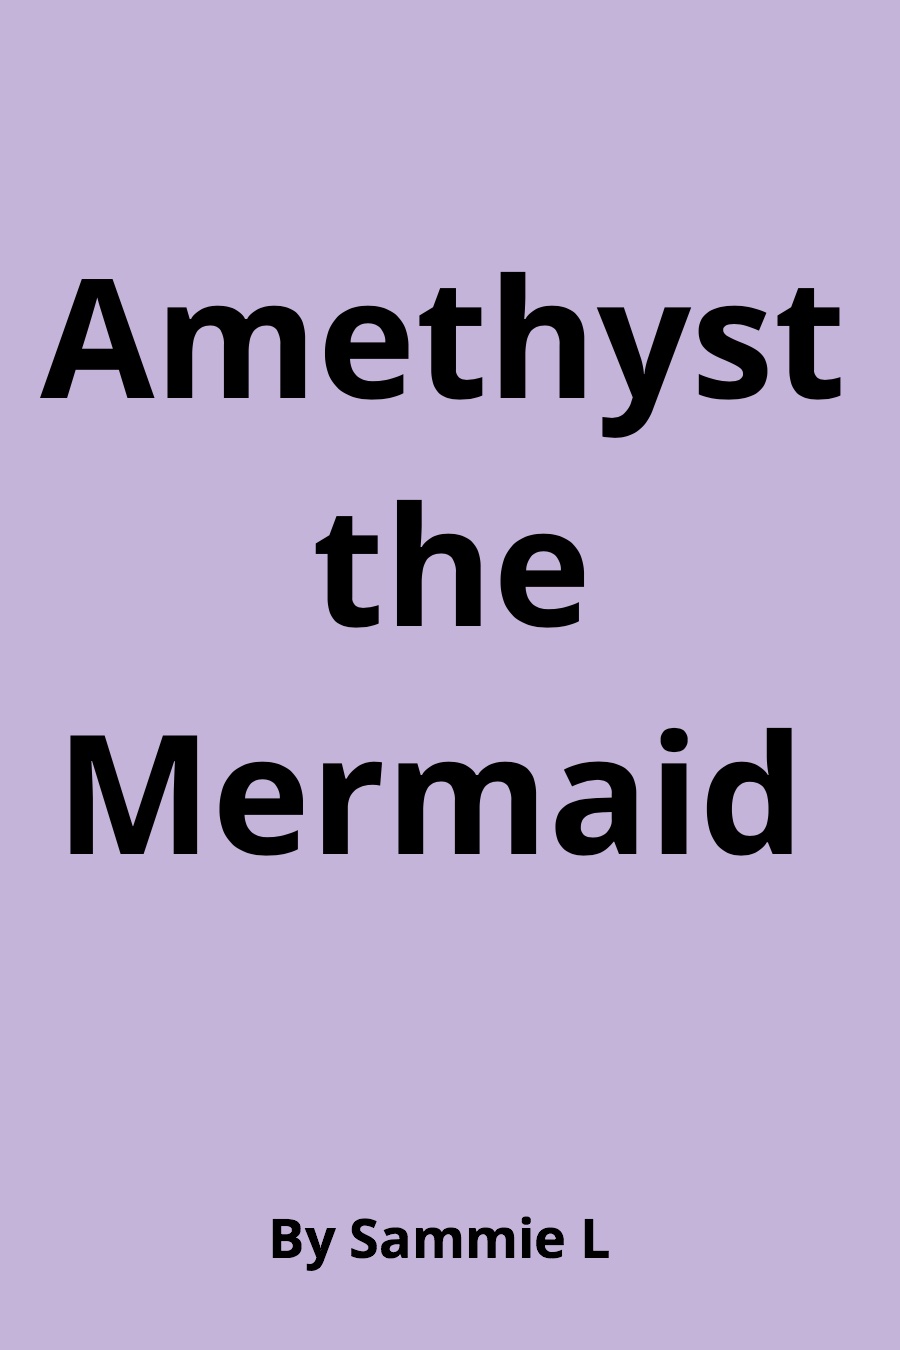 Amethyst the Mermaid by Samantha Sammie L